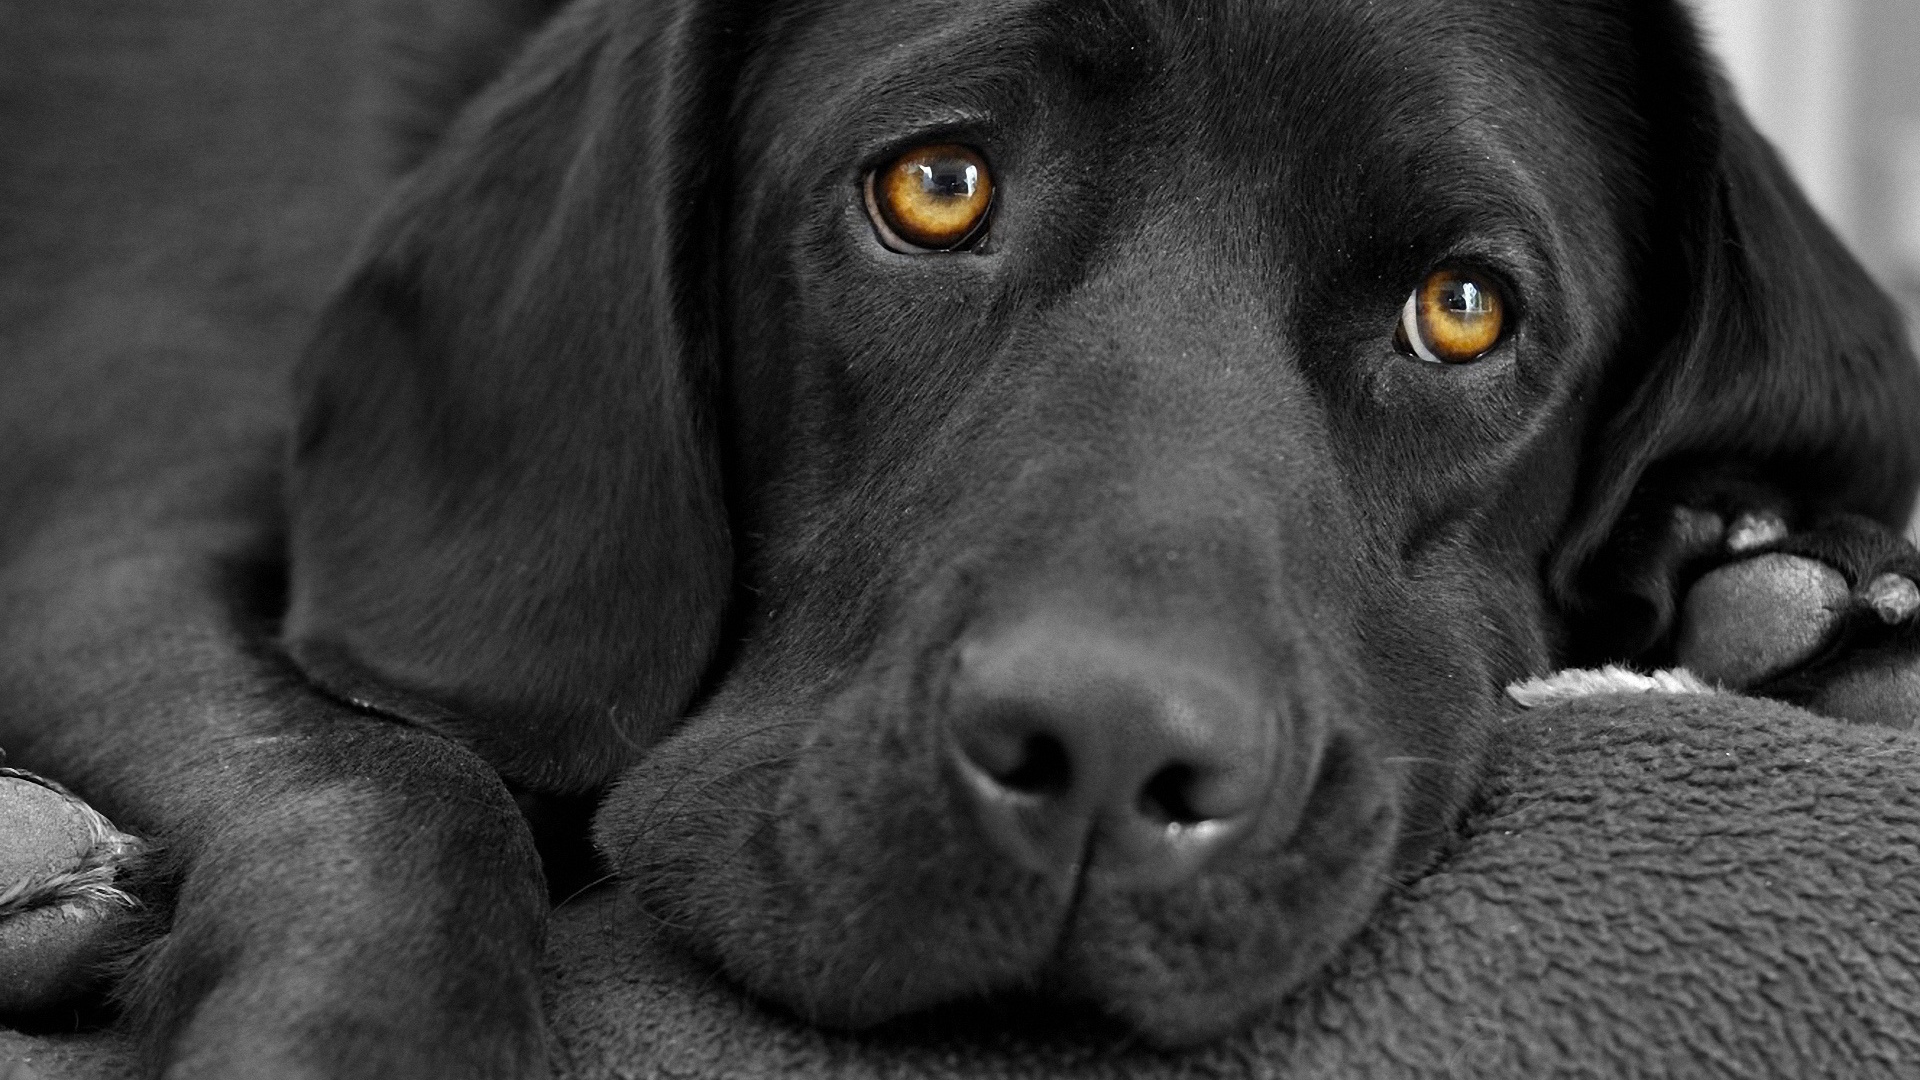 ラブラドール犬イメージ壁紙,犬,黒,ラブラドール・レトリバー,鼻